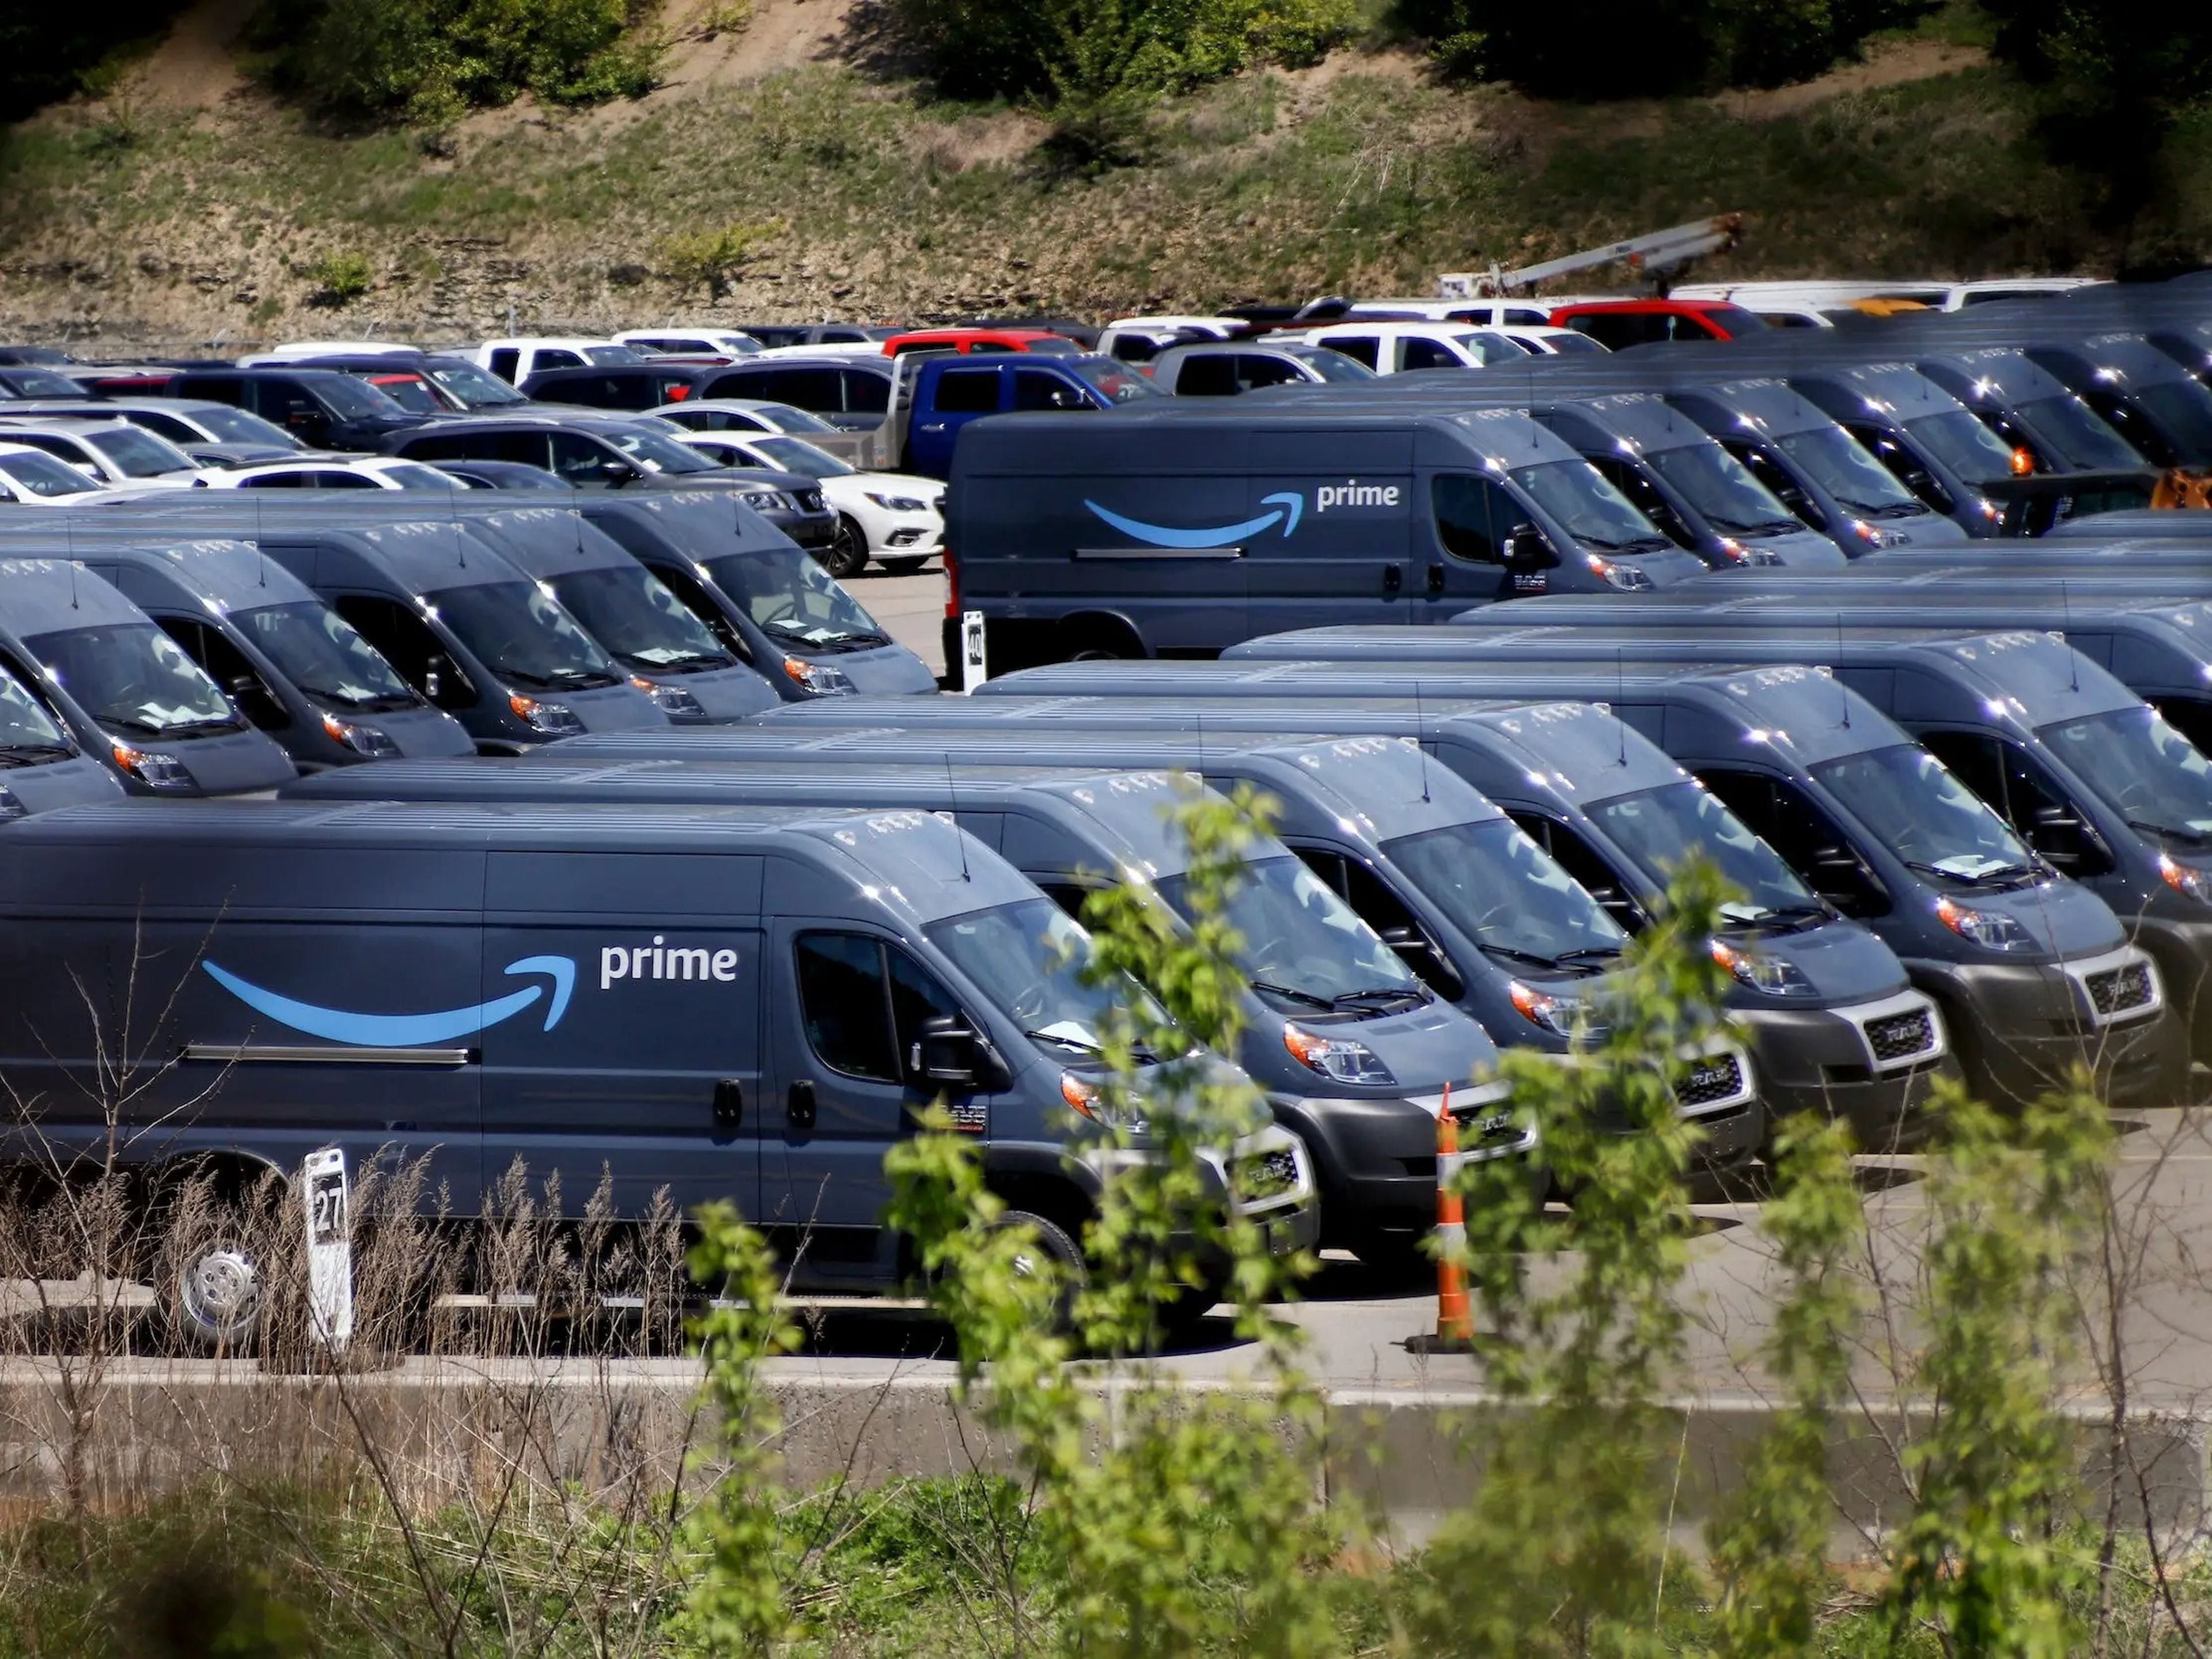 Amazon delivery vans